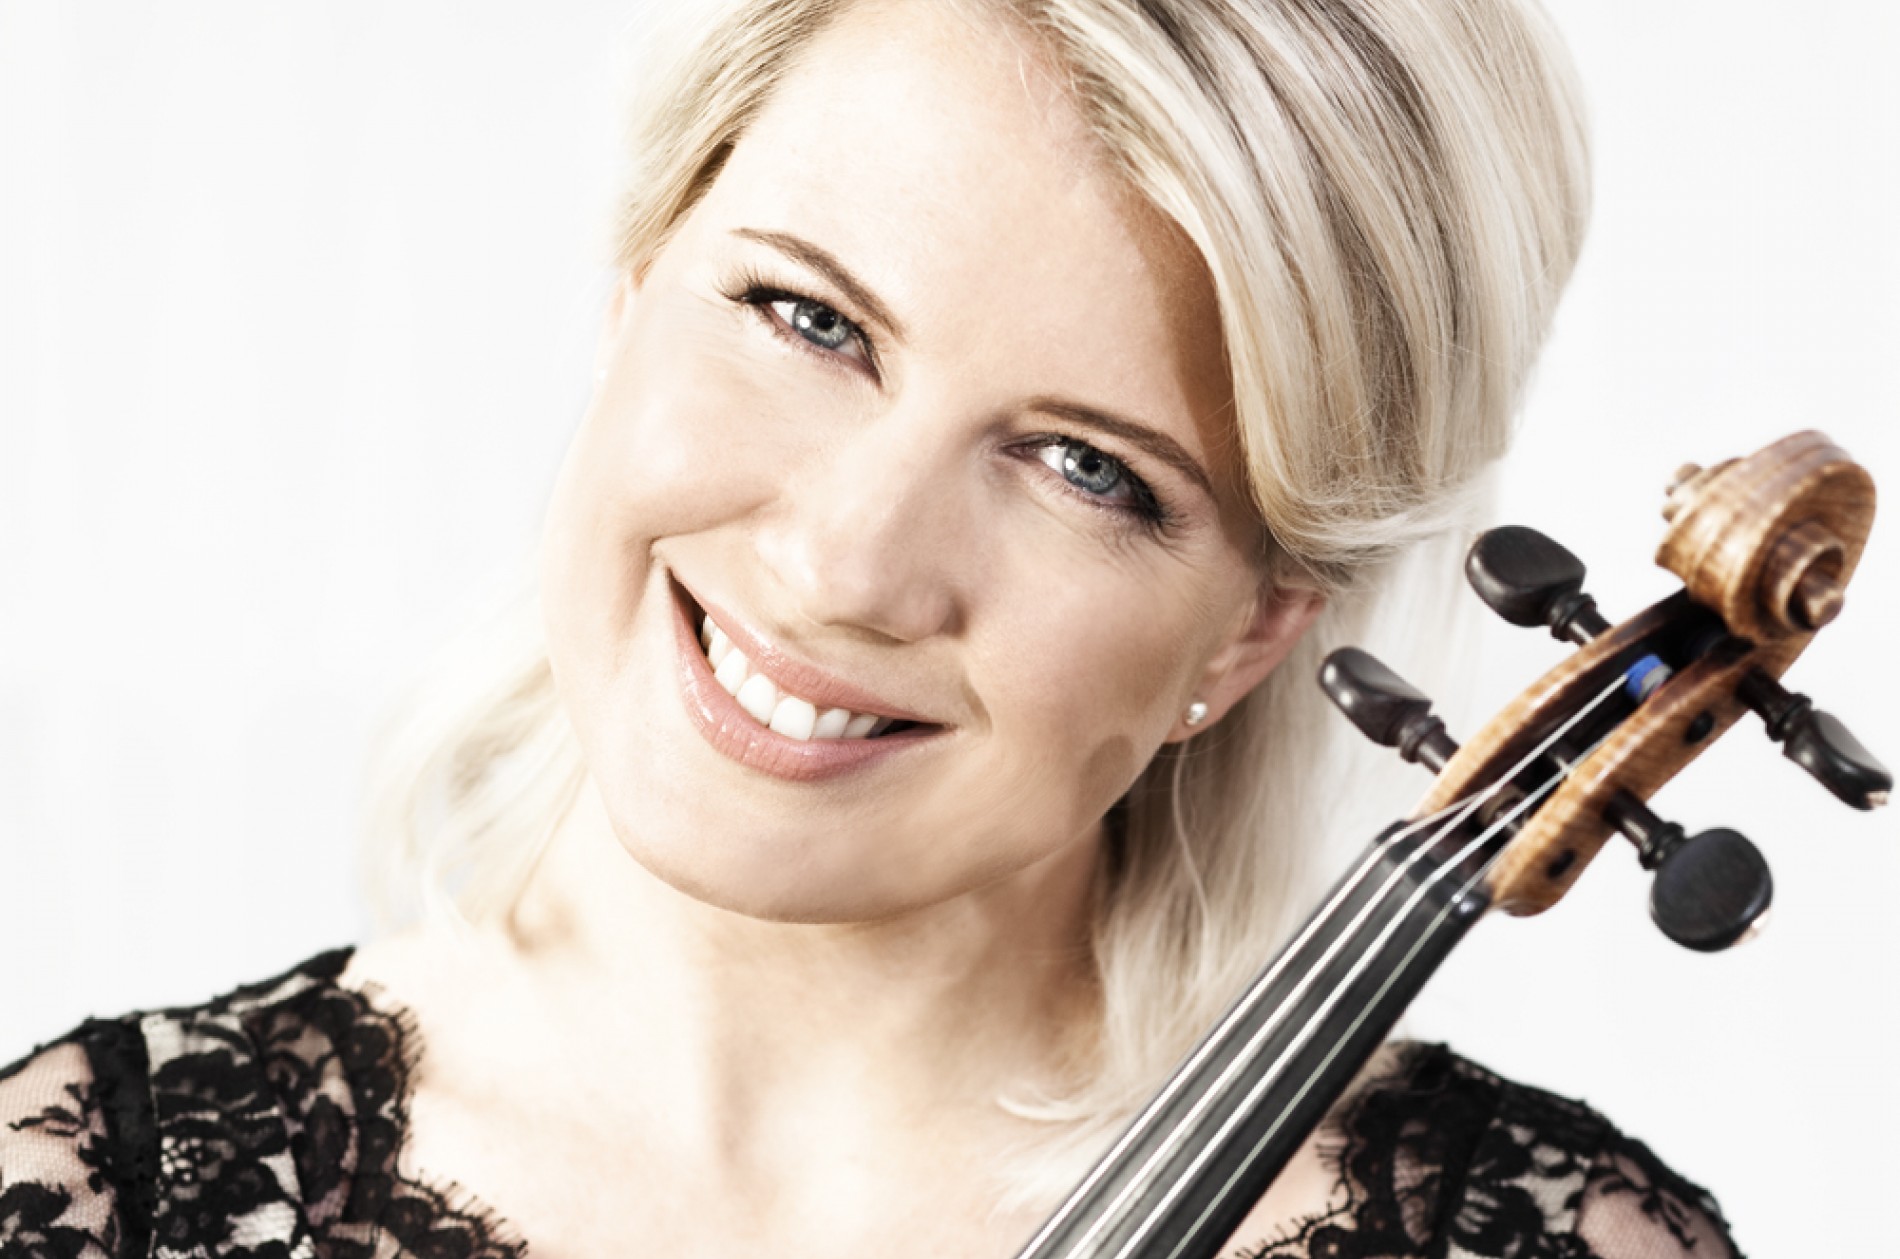 Elina Vähälä holds her violin